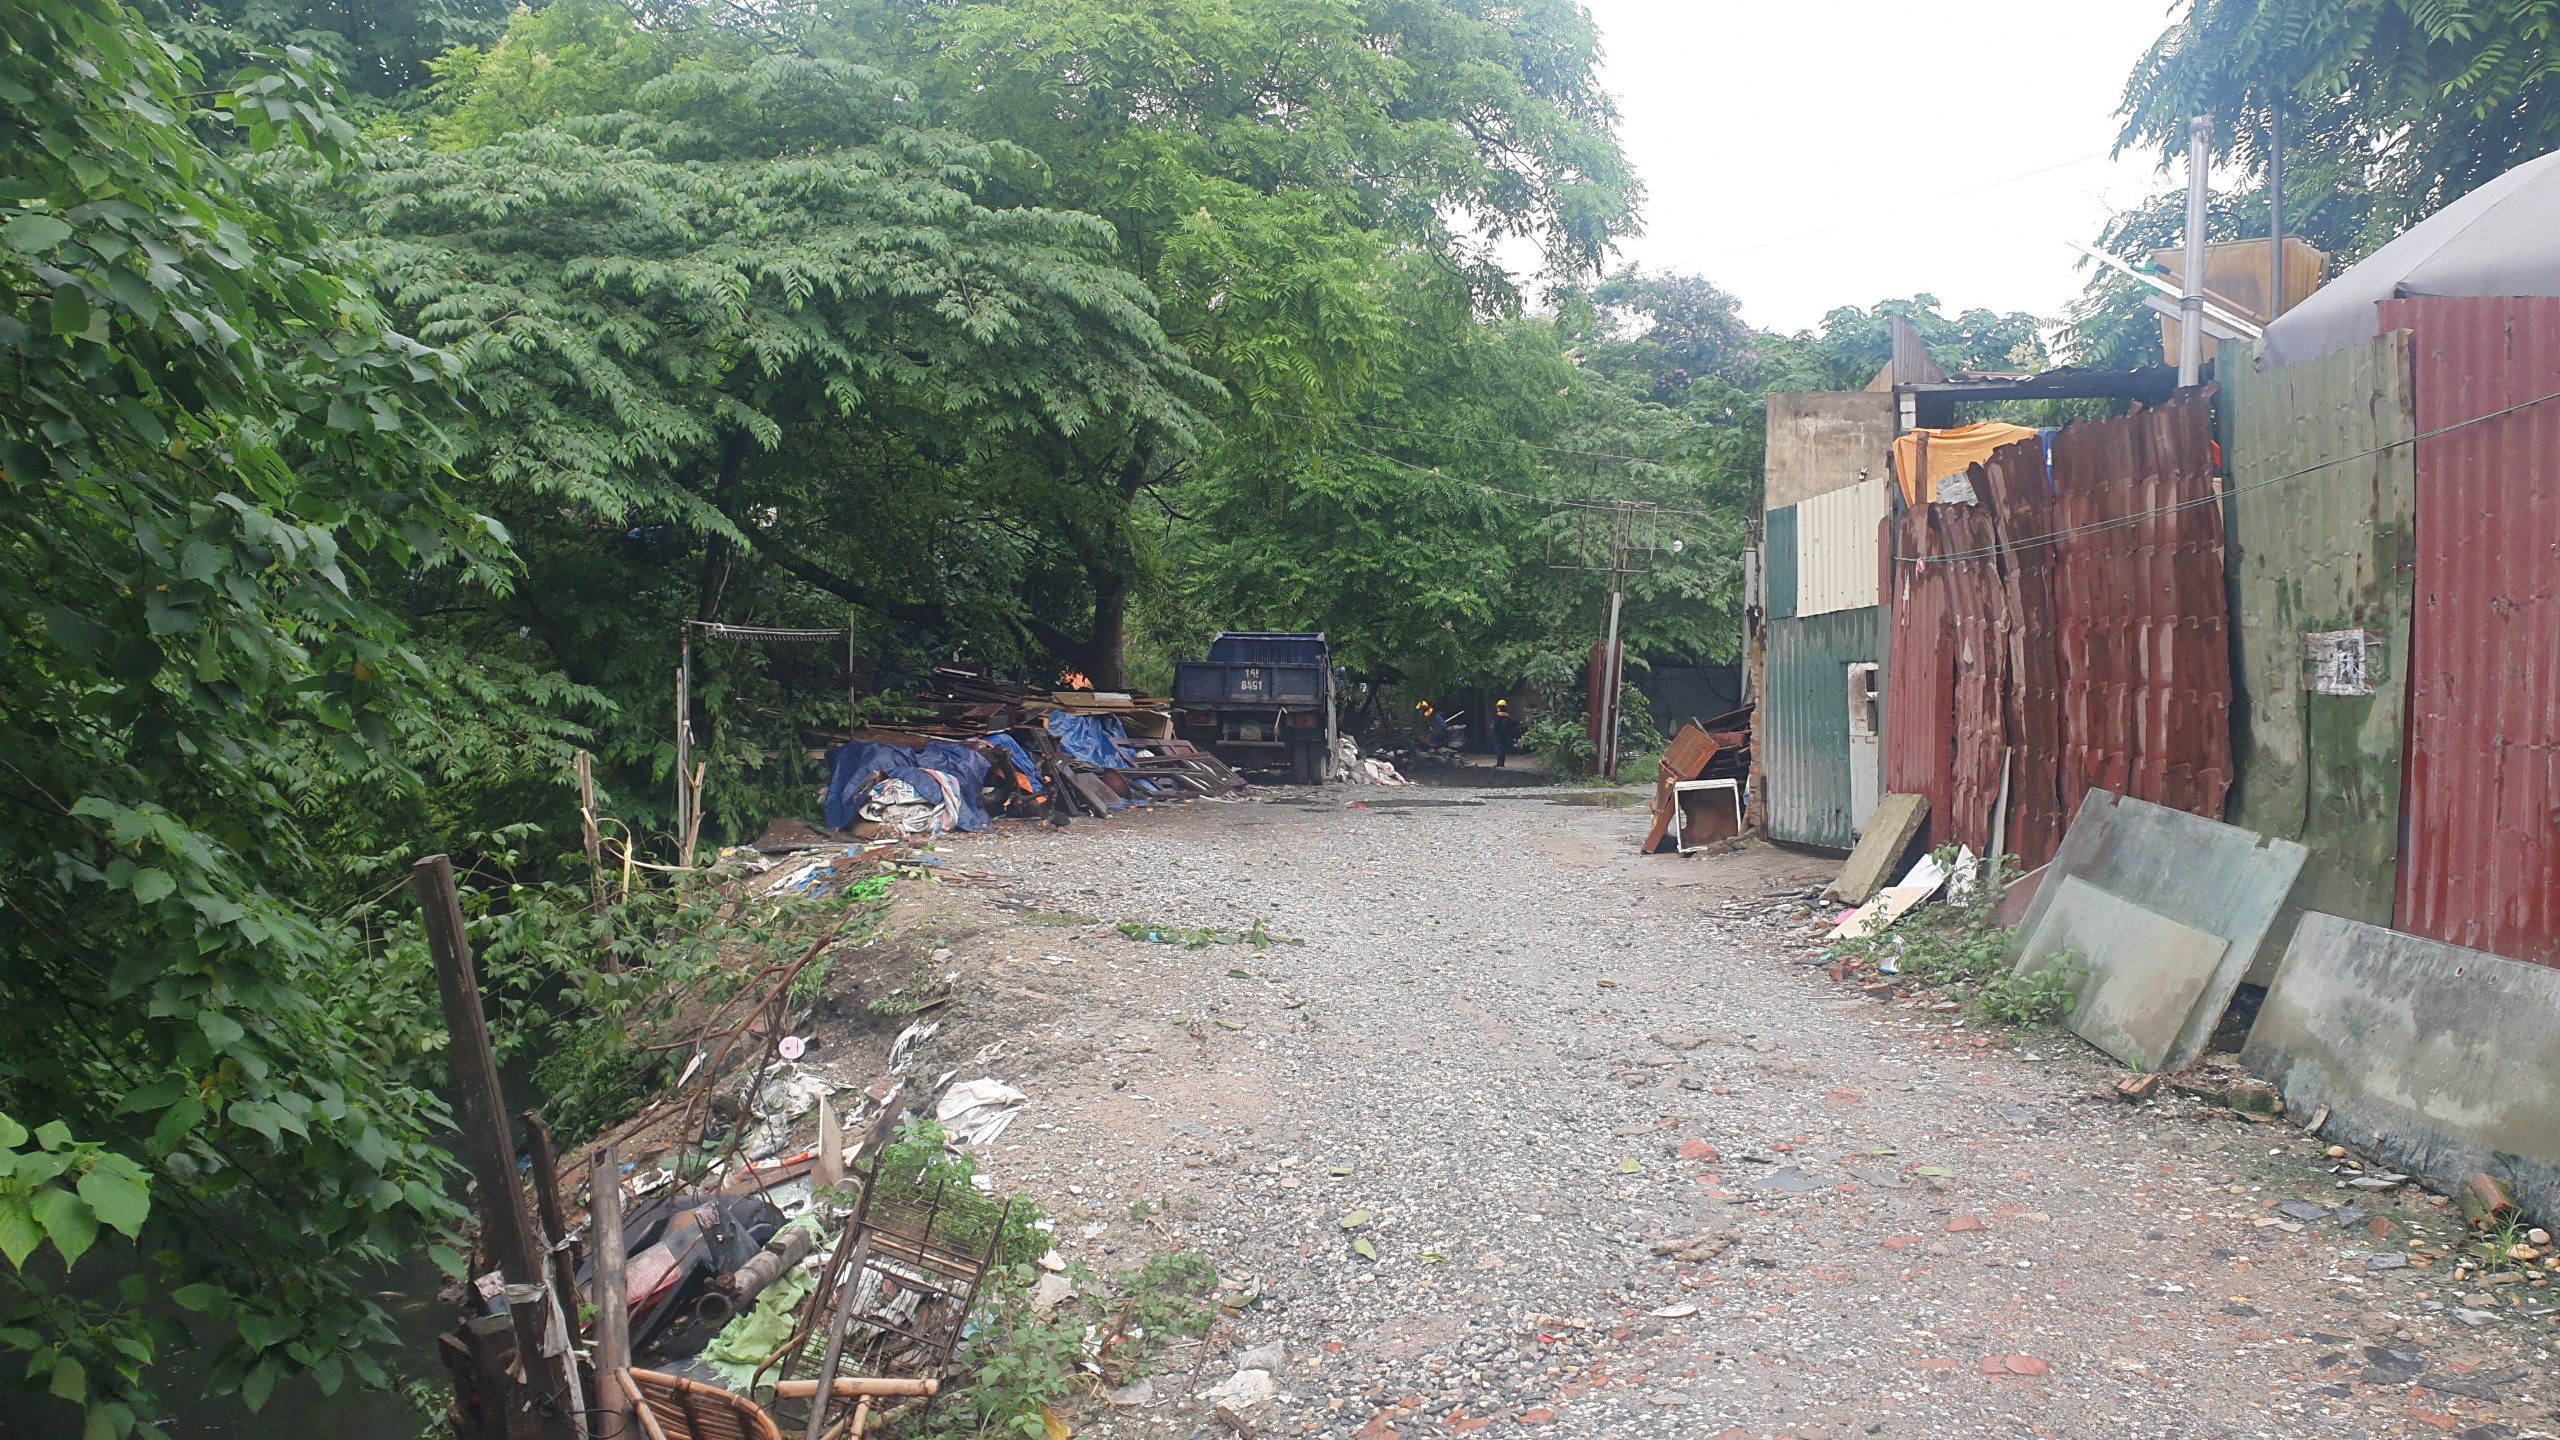 Kênh mương Kẻ Khế ở Hà Nội tràn ngập rác, nguồn nước đen kịt tiềm ẩn nguy cơ dịch bệnh - Ảnh 1.